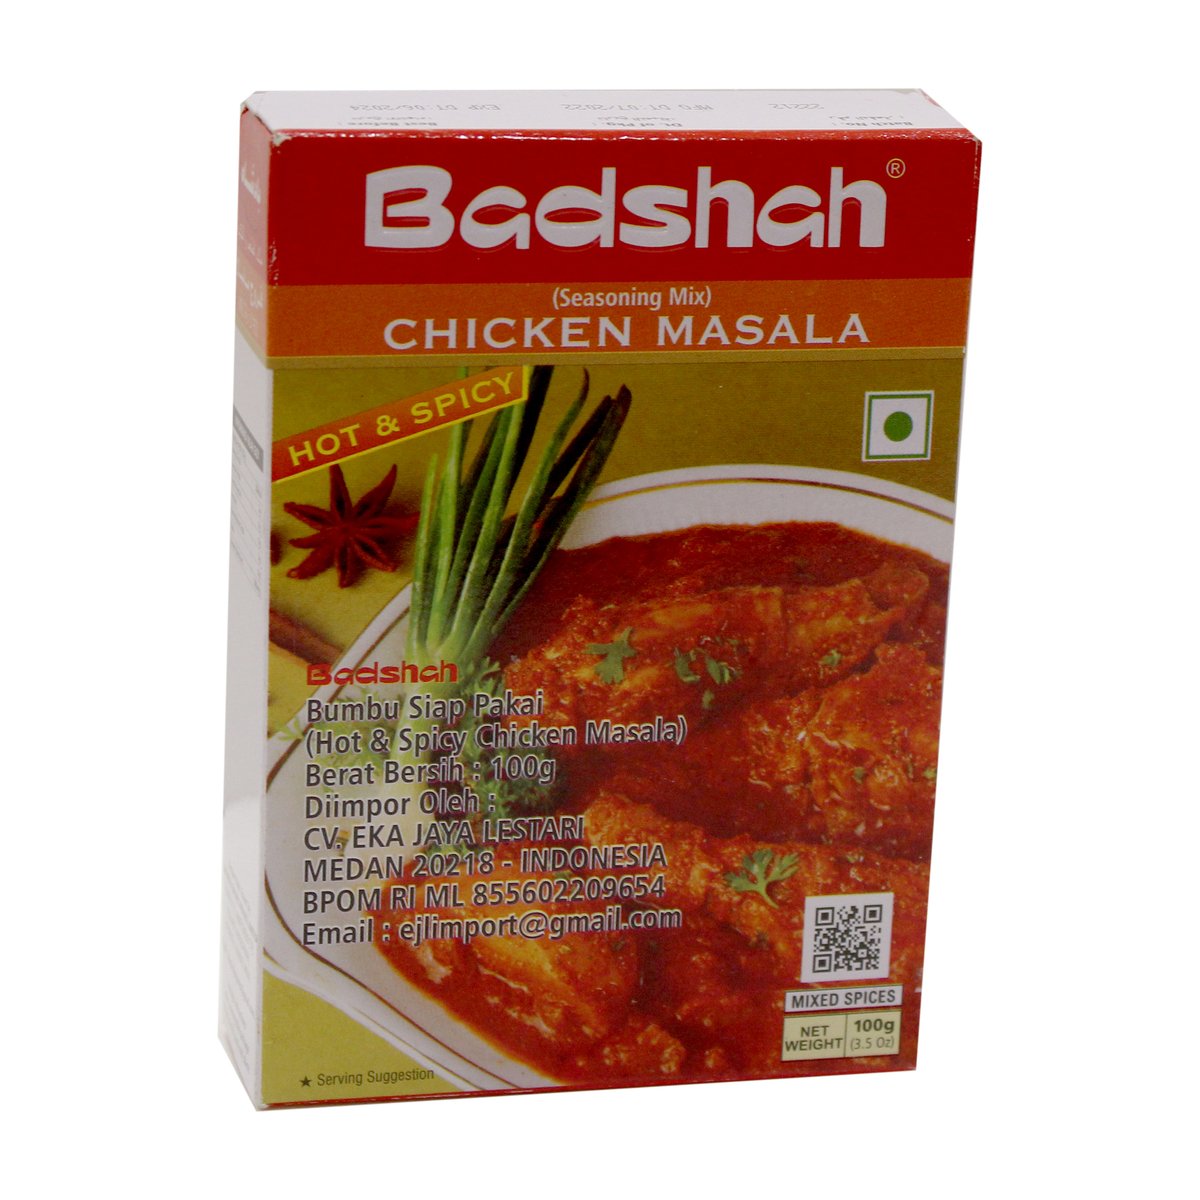 Badshah Chicken Masala Hot & Spicy 100g